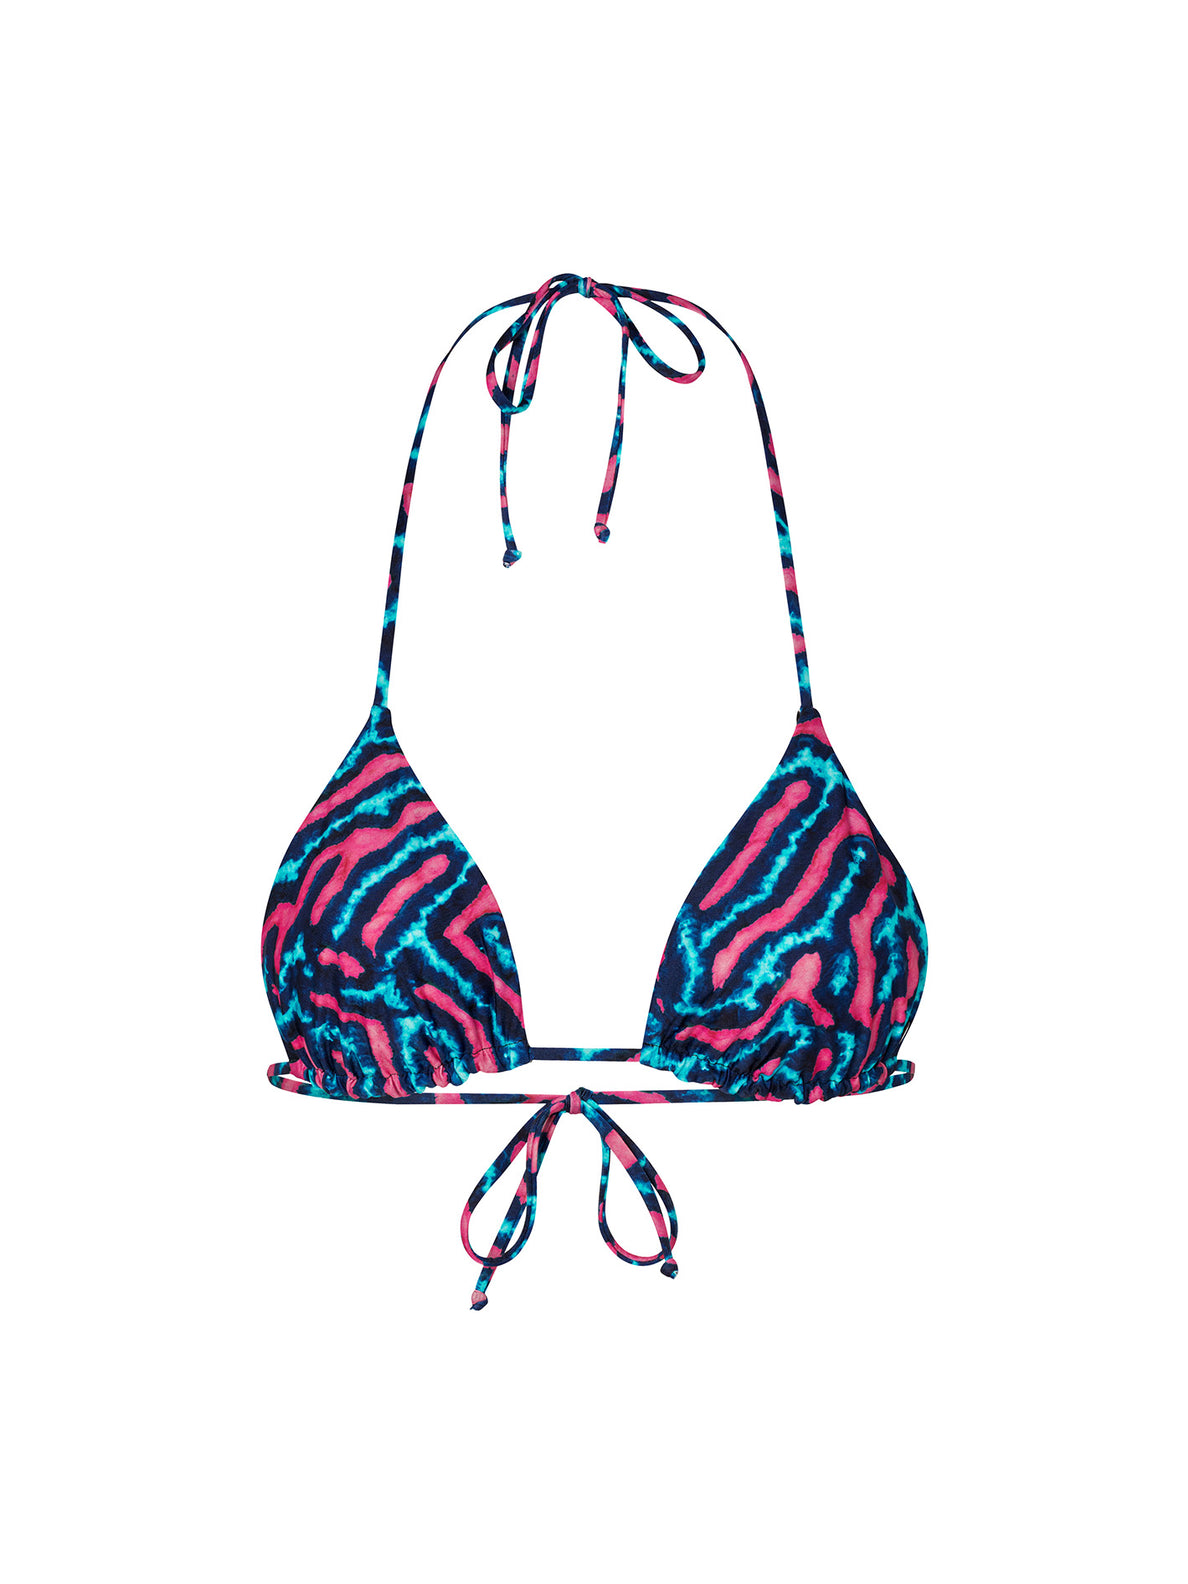 Coral Morph Triangle Bikini Top - Multi (O1412106_MLT) [20]